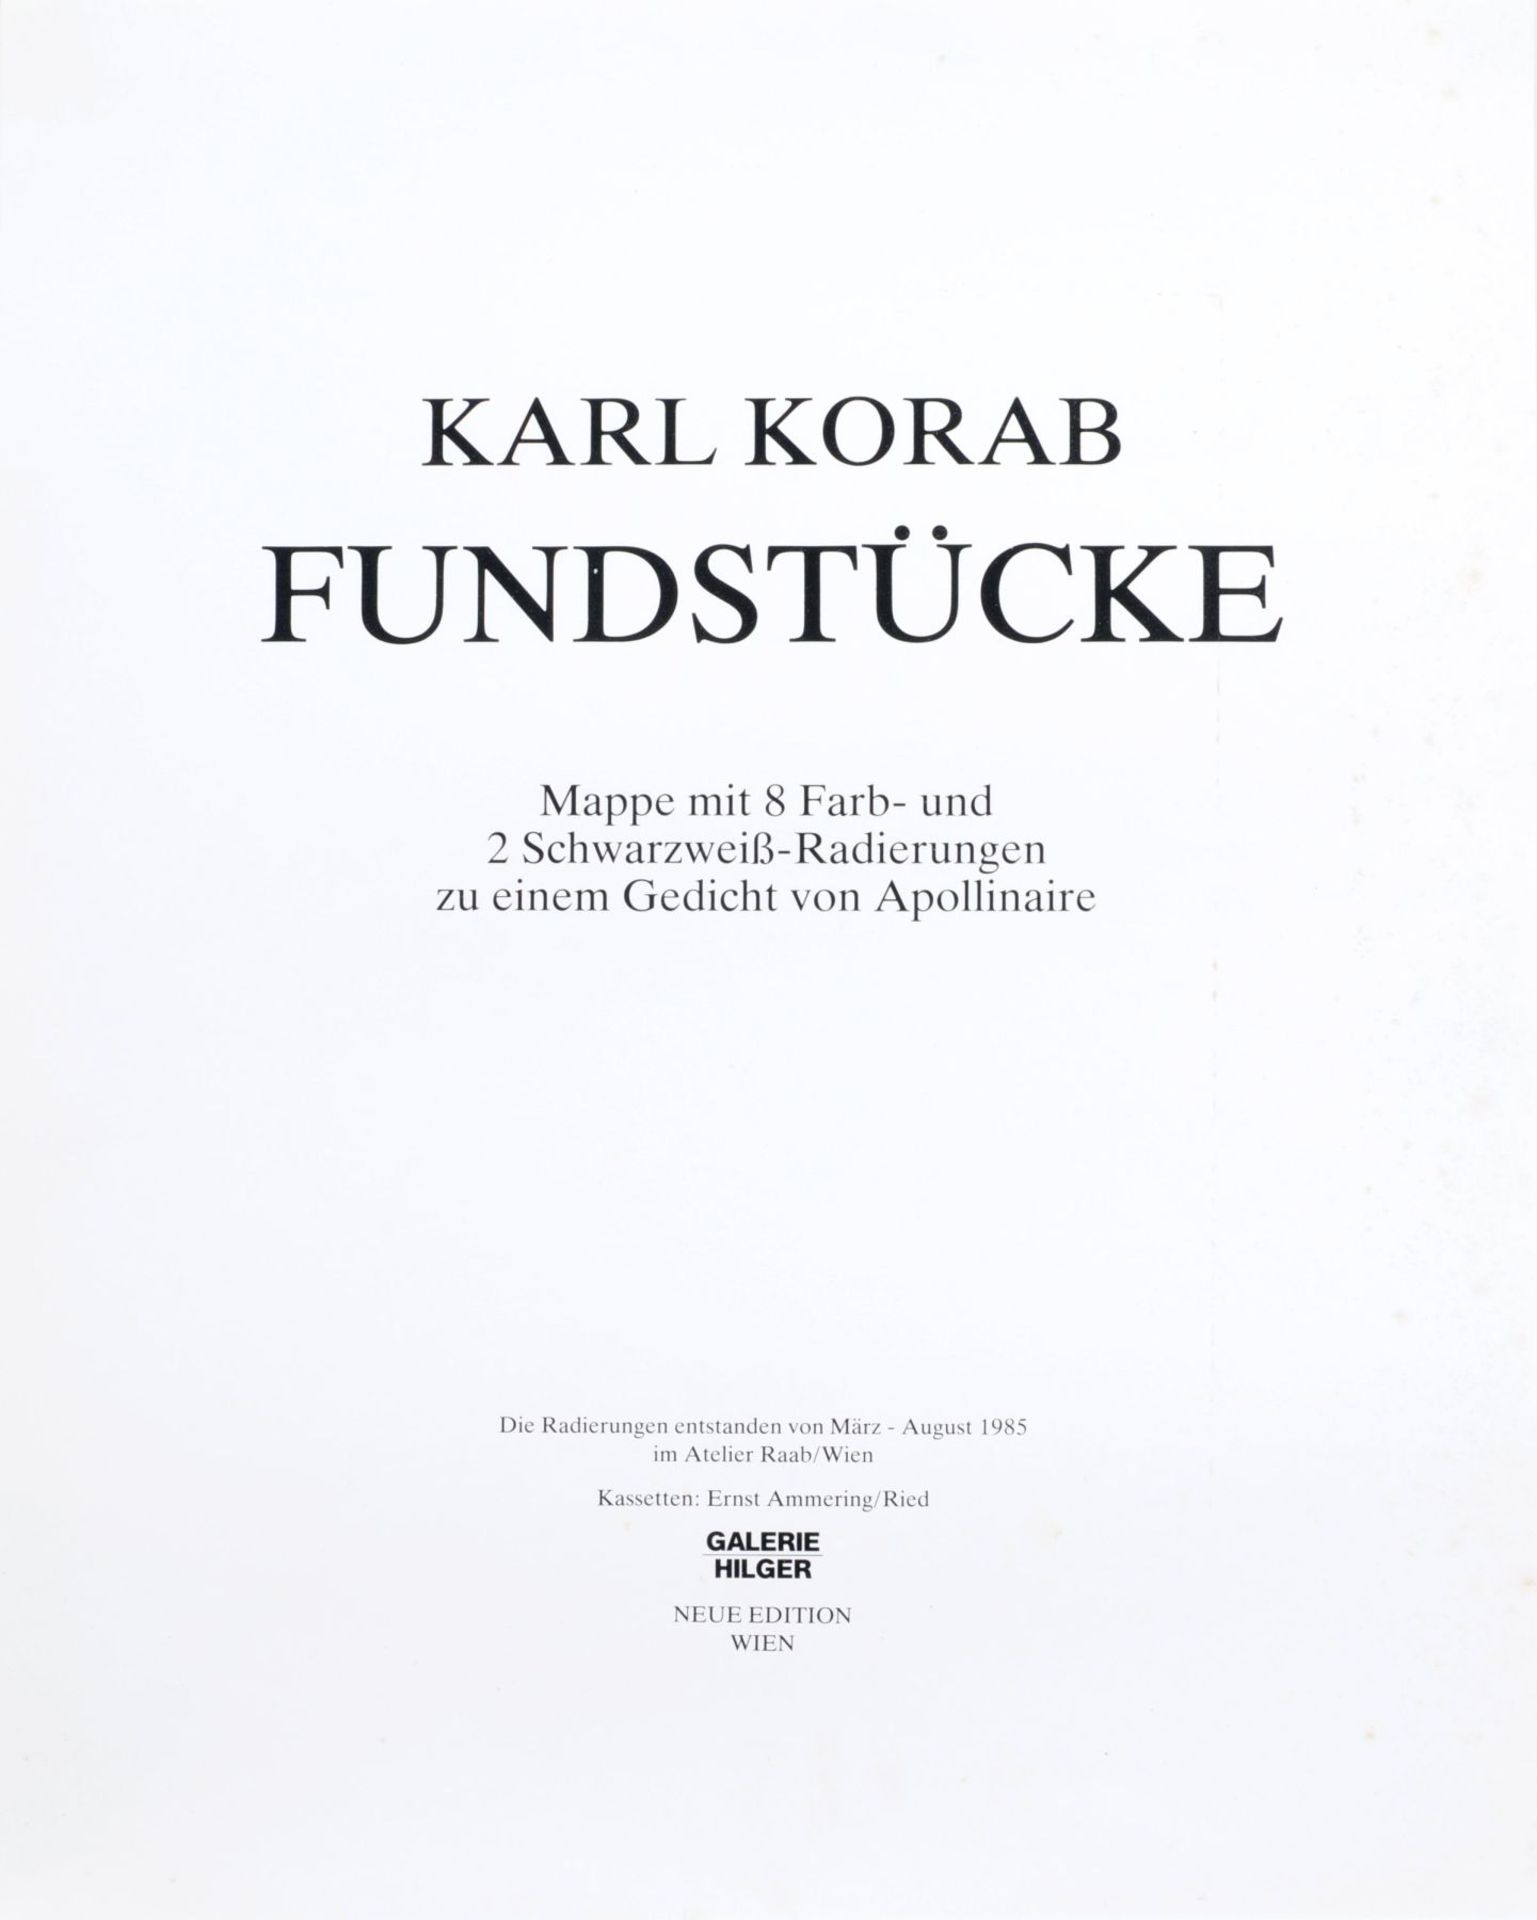 Karl Korab "Fundstücke". 1985.< - Bild 2 aus 10